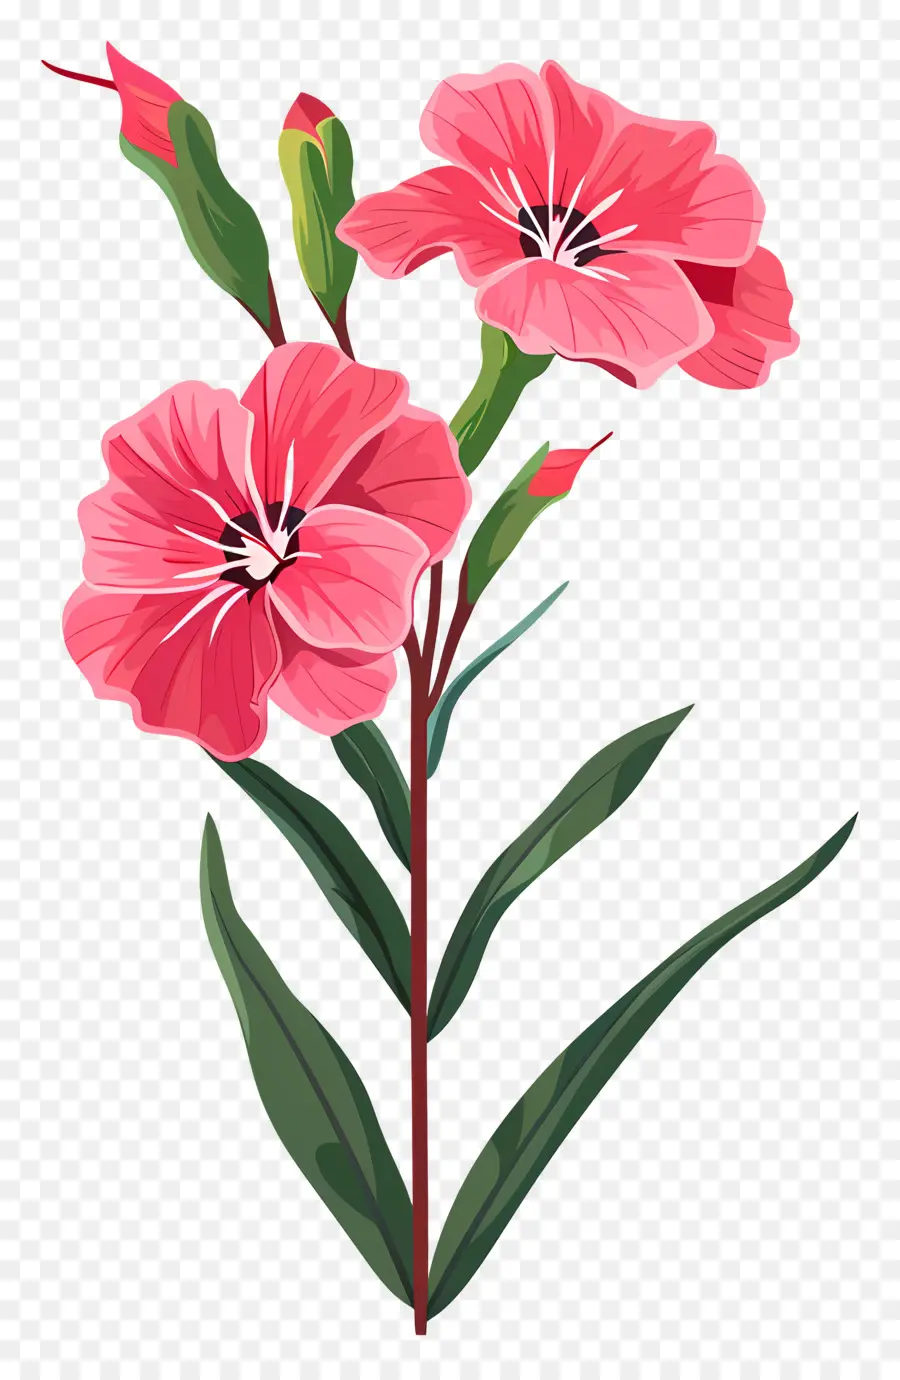 hoa hồng - Đóng hoa màu hồng với lá